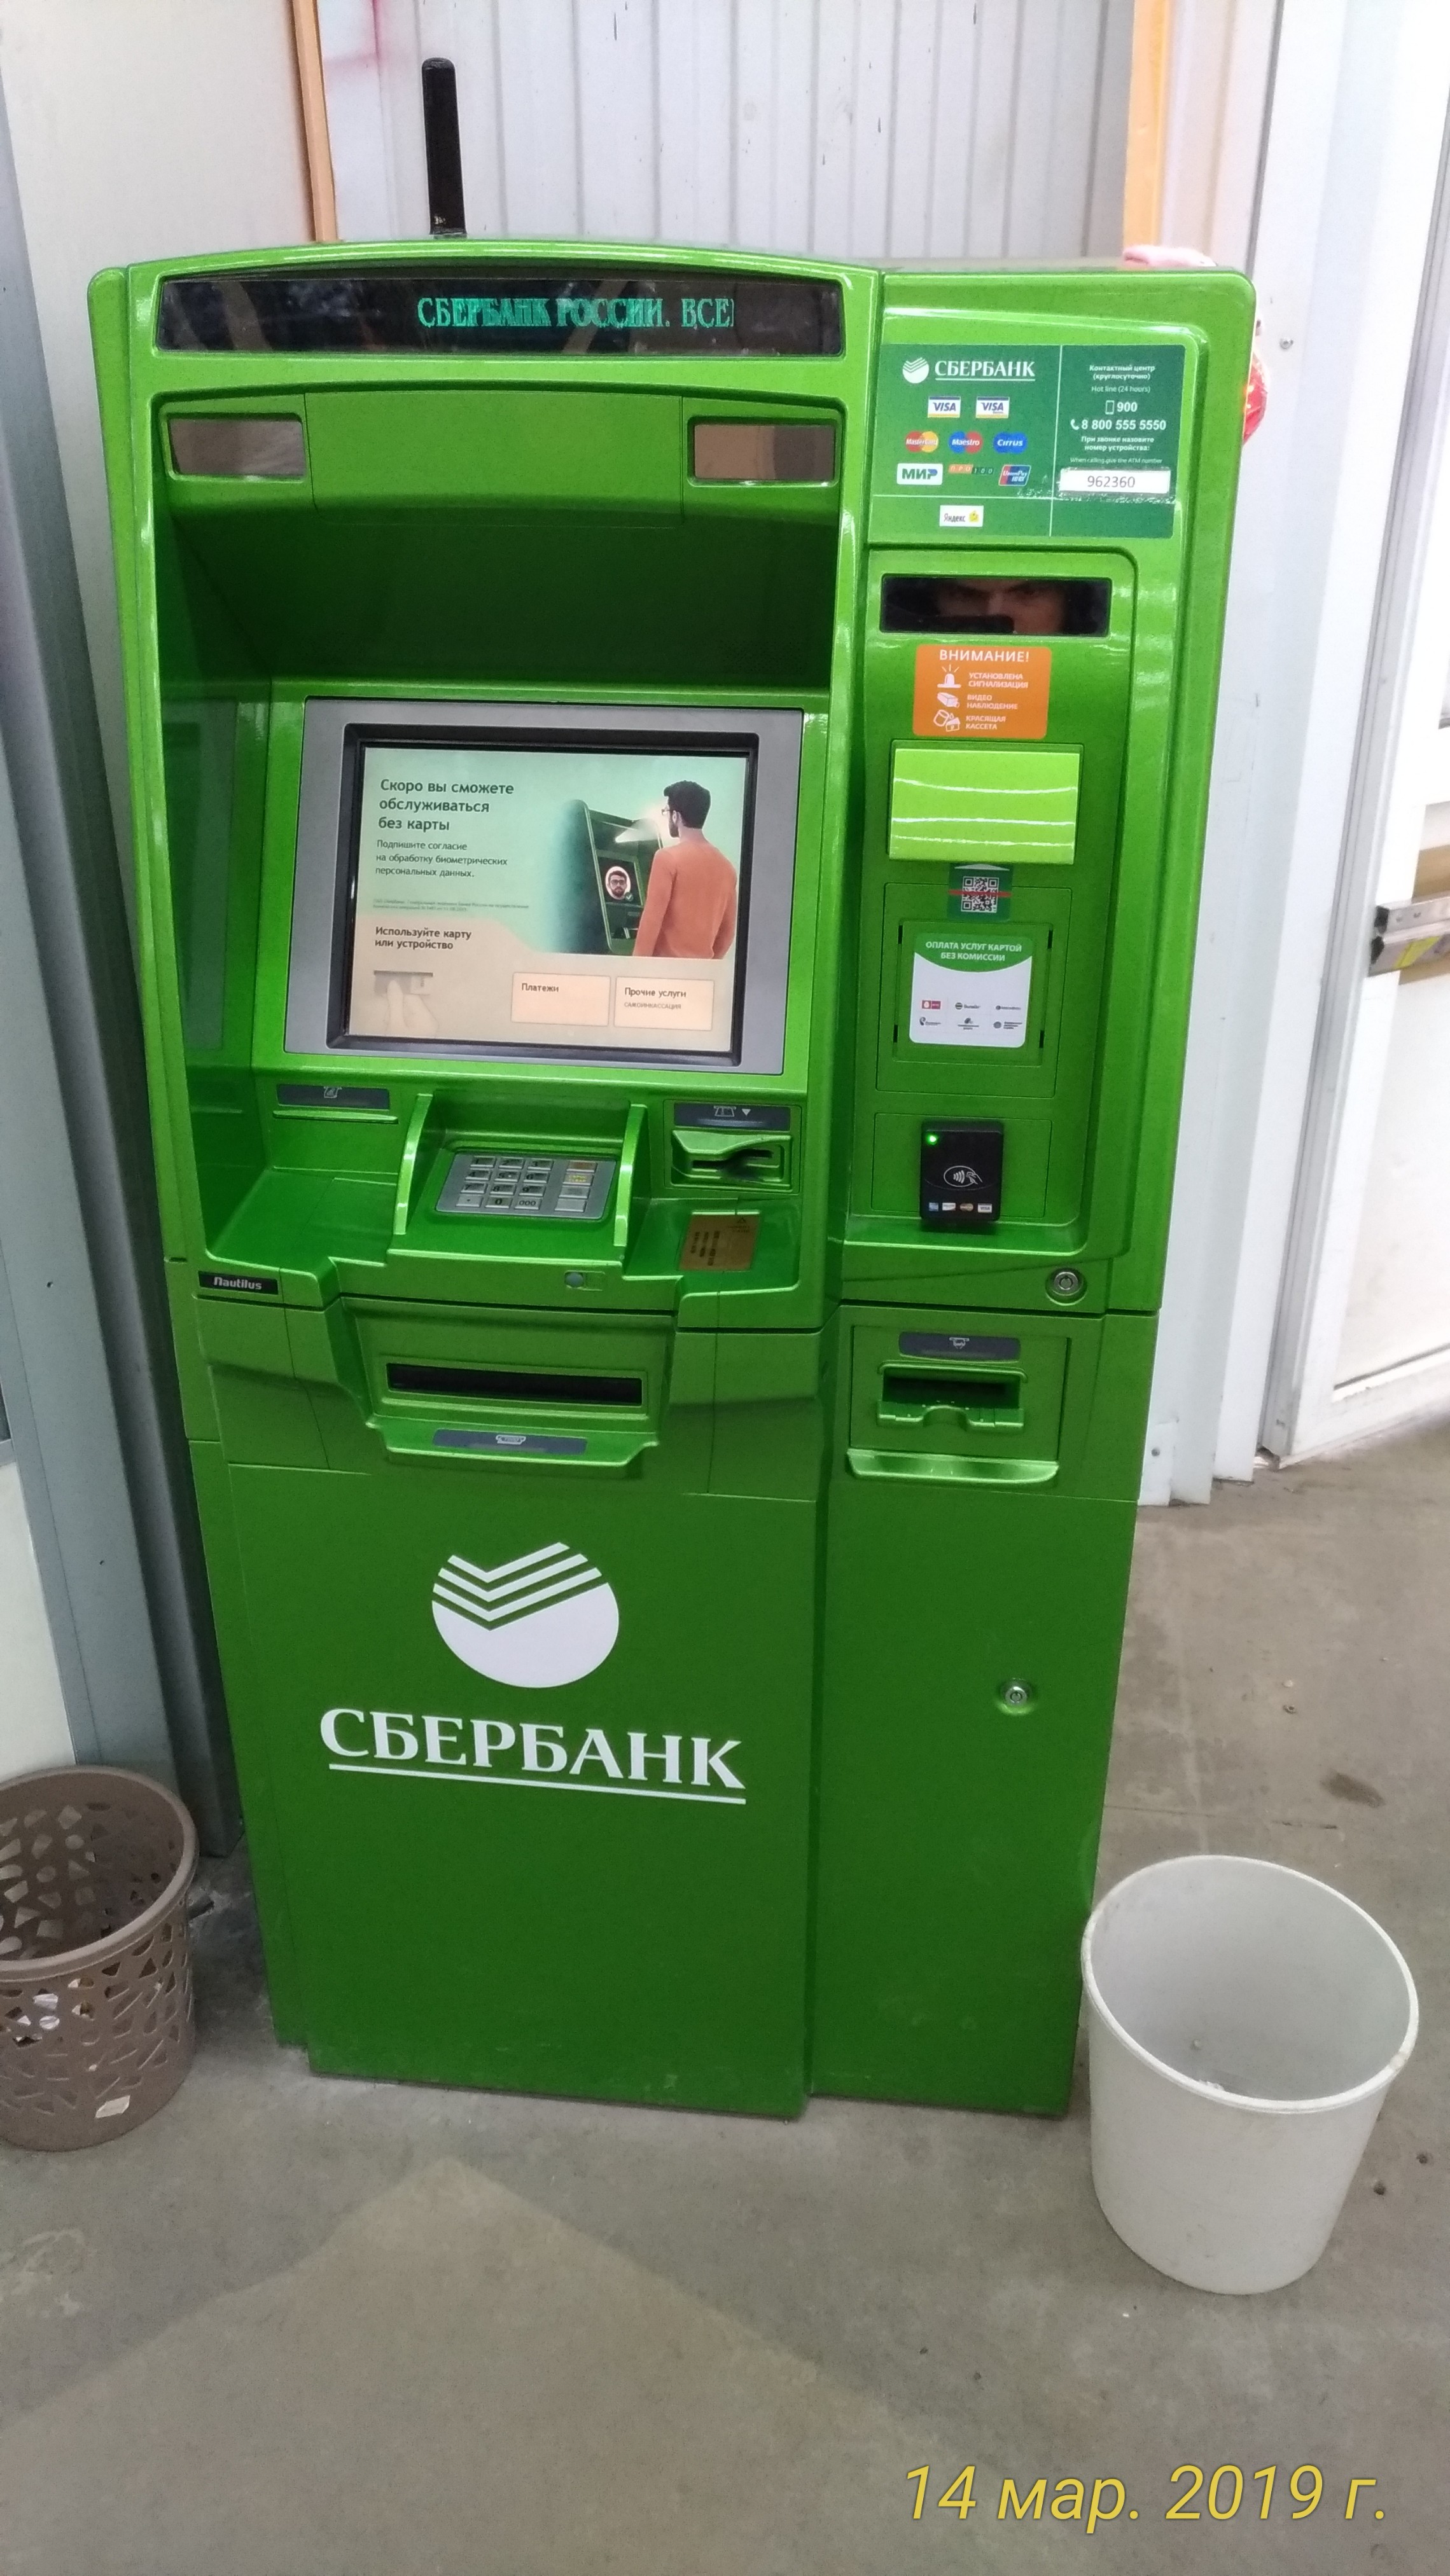 фото банкомат сбербанка куда прикладывать карту